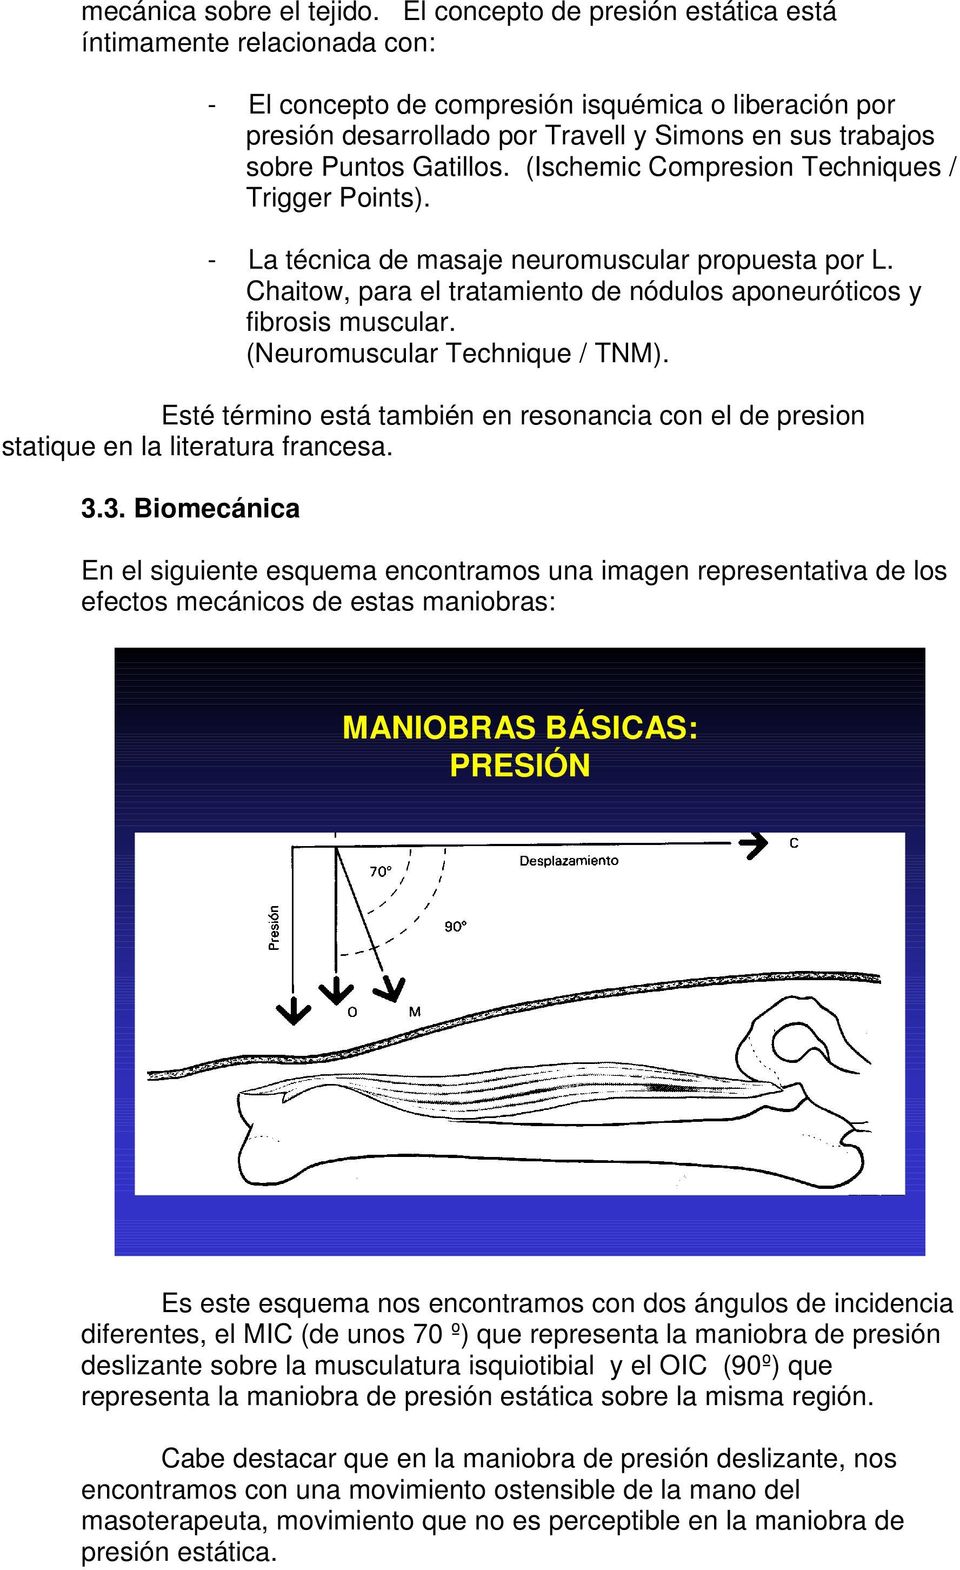 Gatillos. (Ischemic Compresion Techniques / Trigger Points). - La técnica de masaje neuromuscular propuesta por L. Chaitow, para el tratamiento de nódulos aponeuróticos y fibrosis muscular.